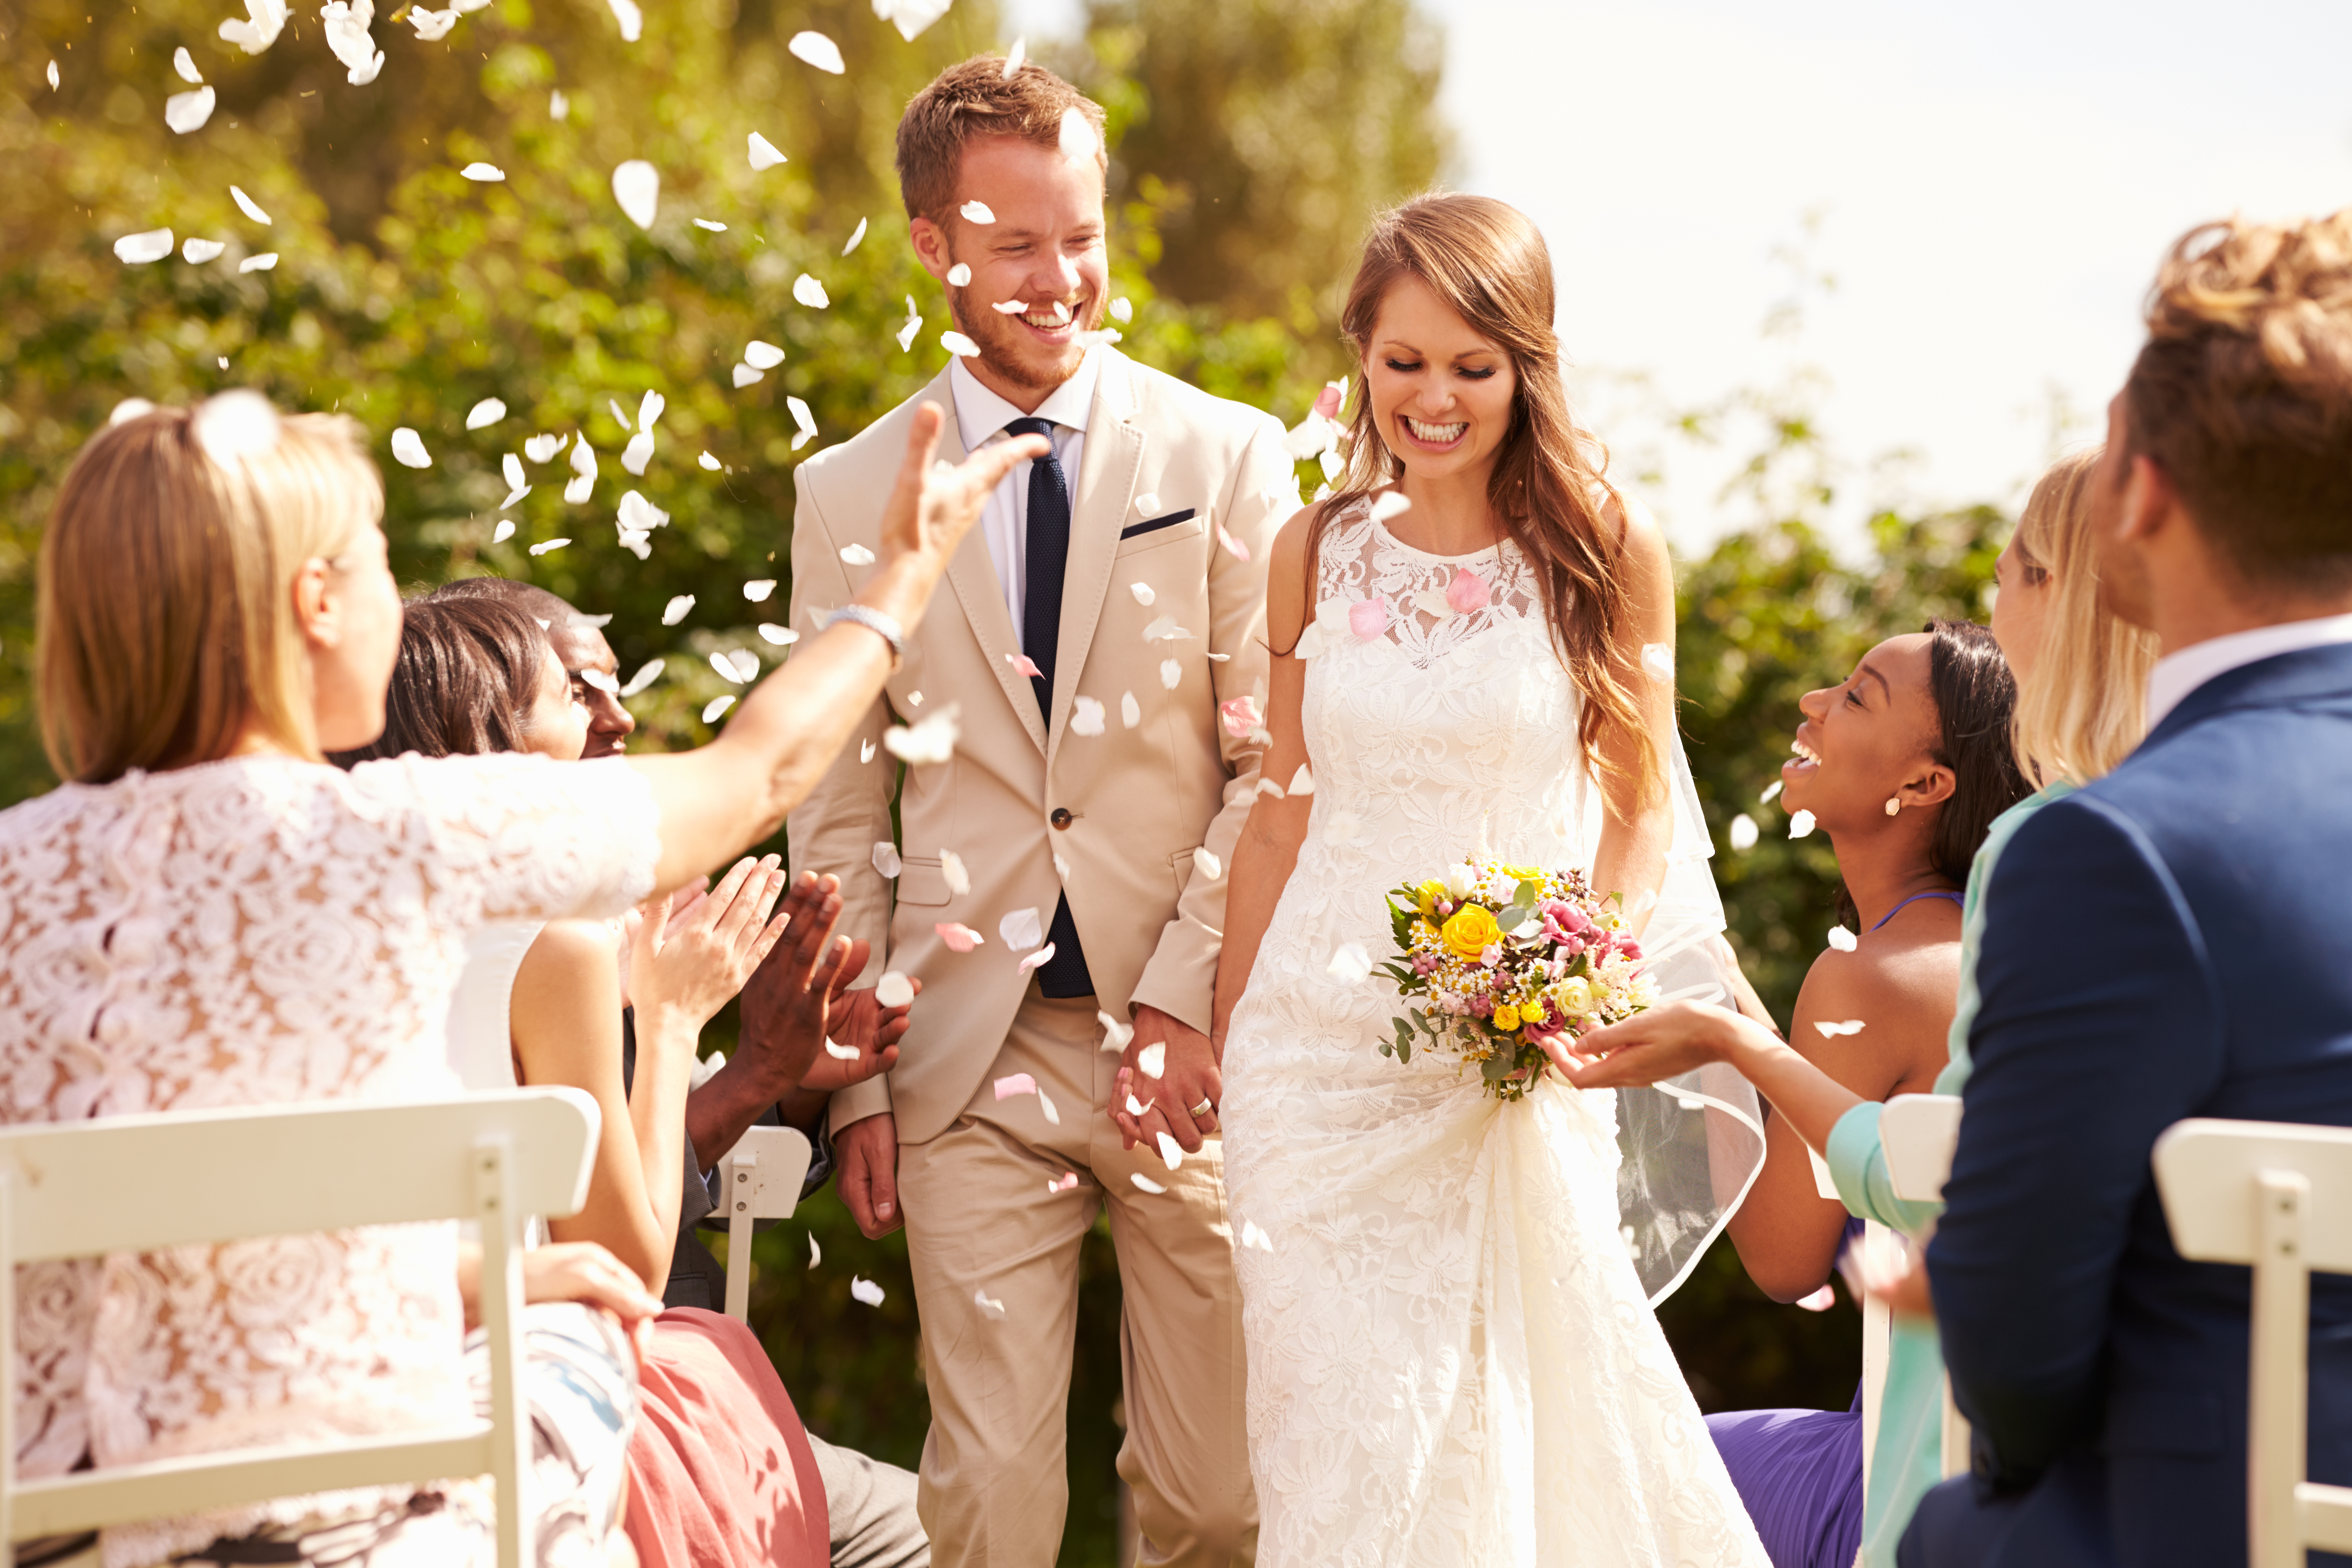 Invités de mariage jetant des confettis sur un couple nouvellement marié | Source : Shutterstock